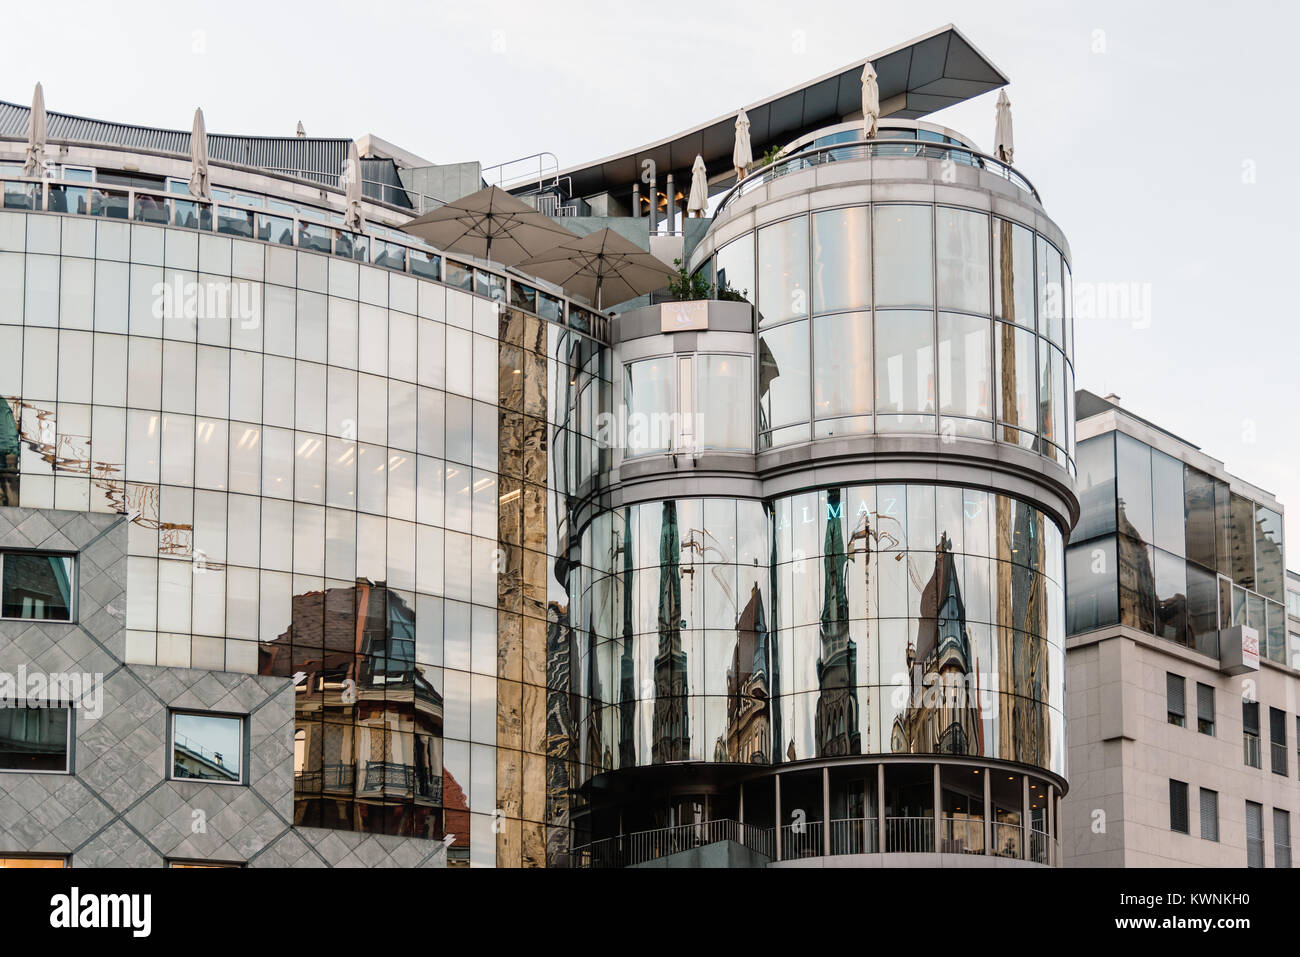 Vienne, Autriche - 16 août 2017 : Construction maison Haas dans Stephenplatz. Conçu par l'architecte autrichien Hans Hollein, c'est un bu Banque D'Images